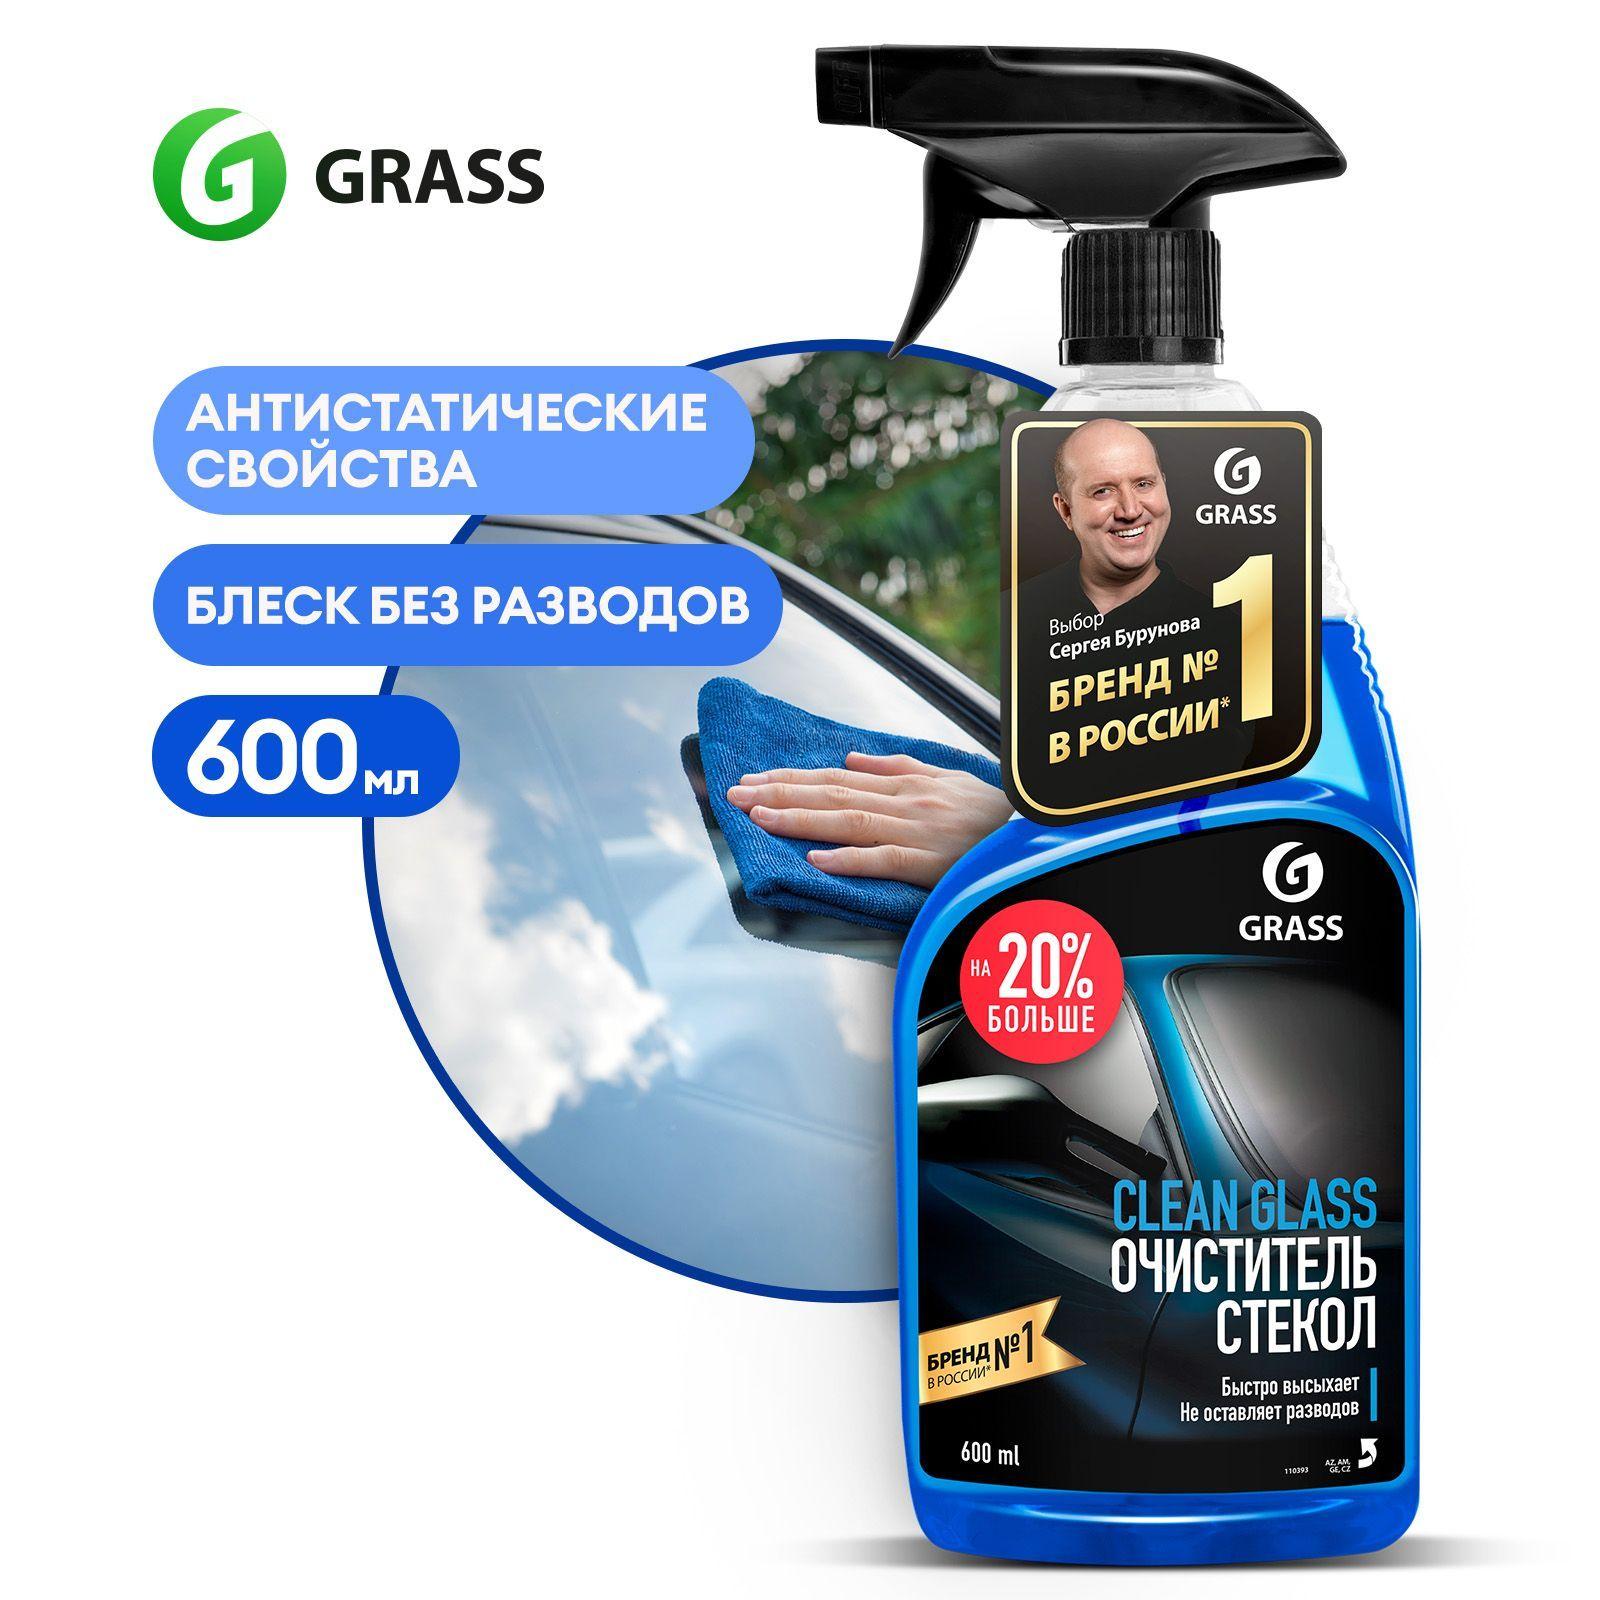 Grass | GRASS Очиститель стекол автомобиля и зеркал Clean Glass 600мл